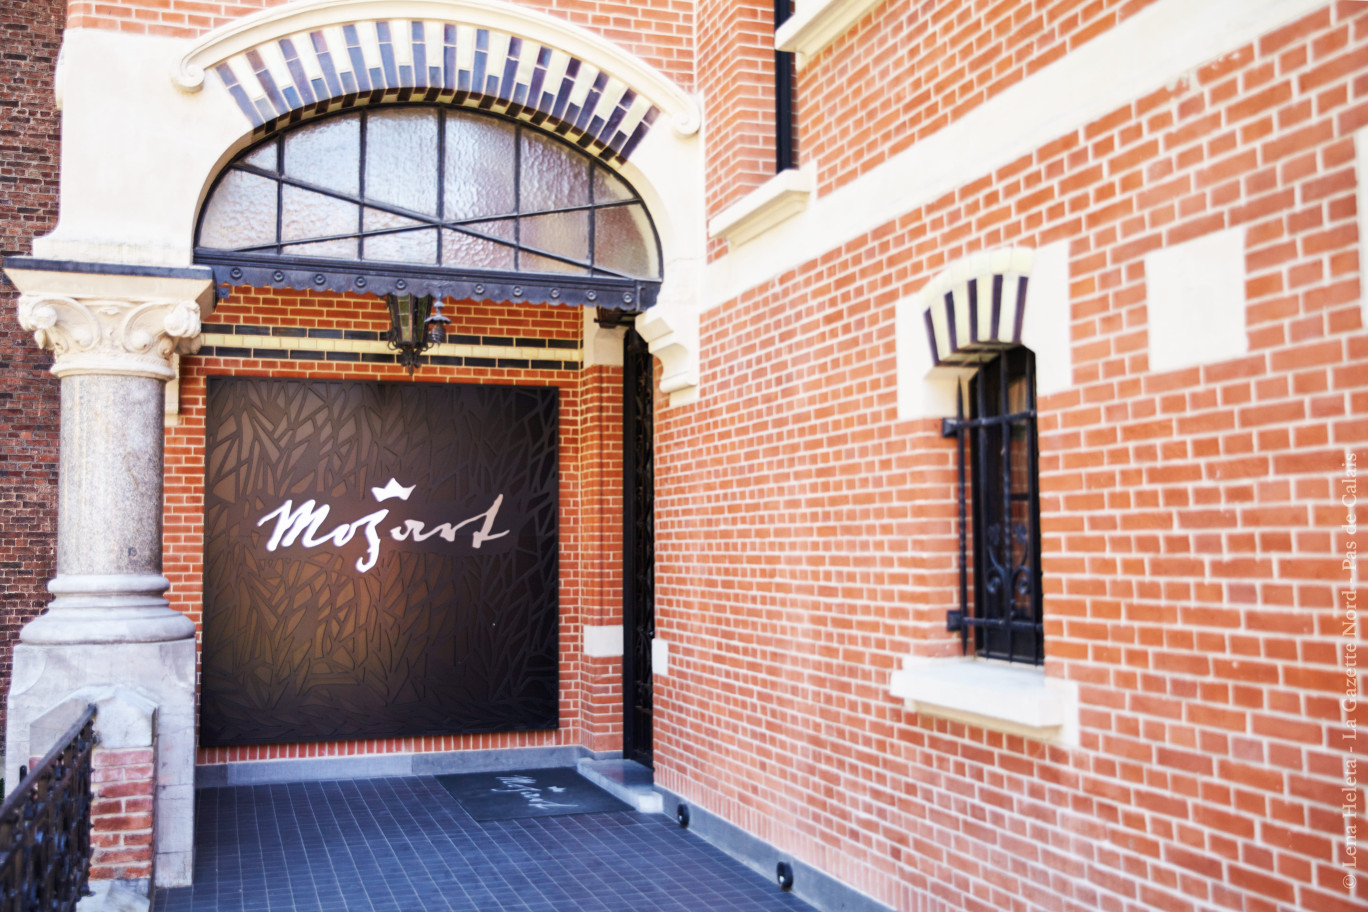 Le siège de Mozart Groupe, dans le quartier Vauban à Lille. © Lena Heleta